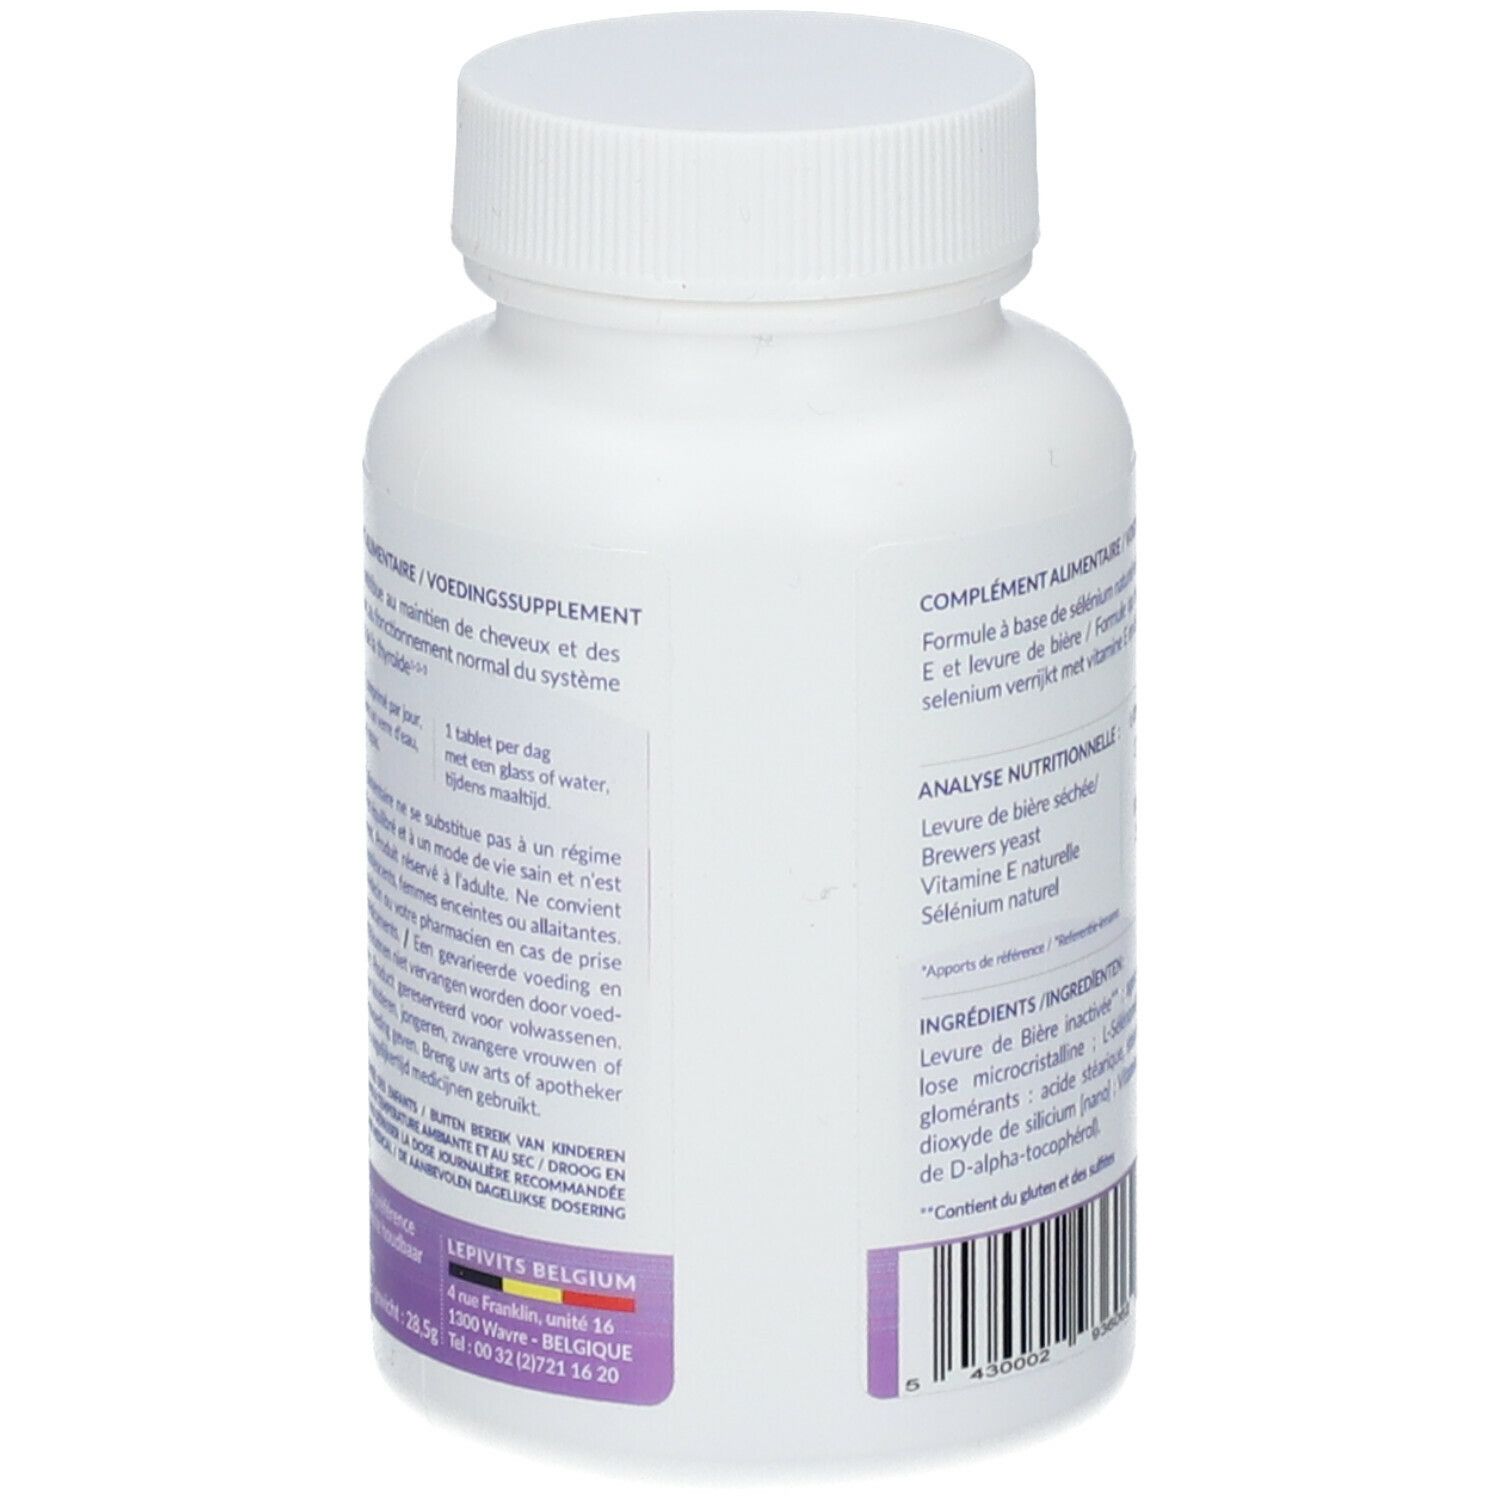 LEPIVITIS® Selenium + Vitamina E